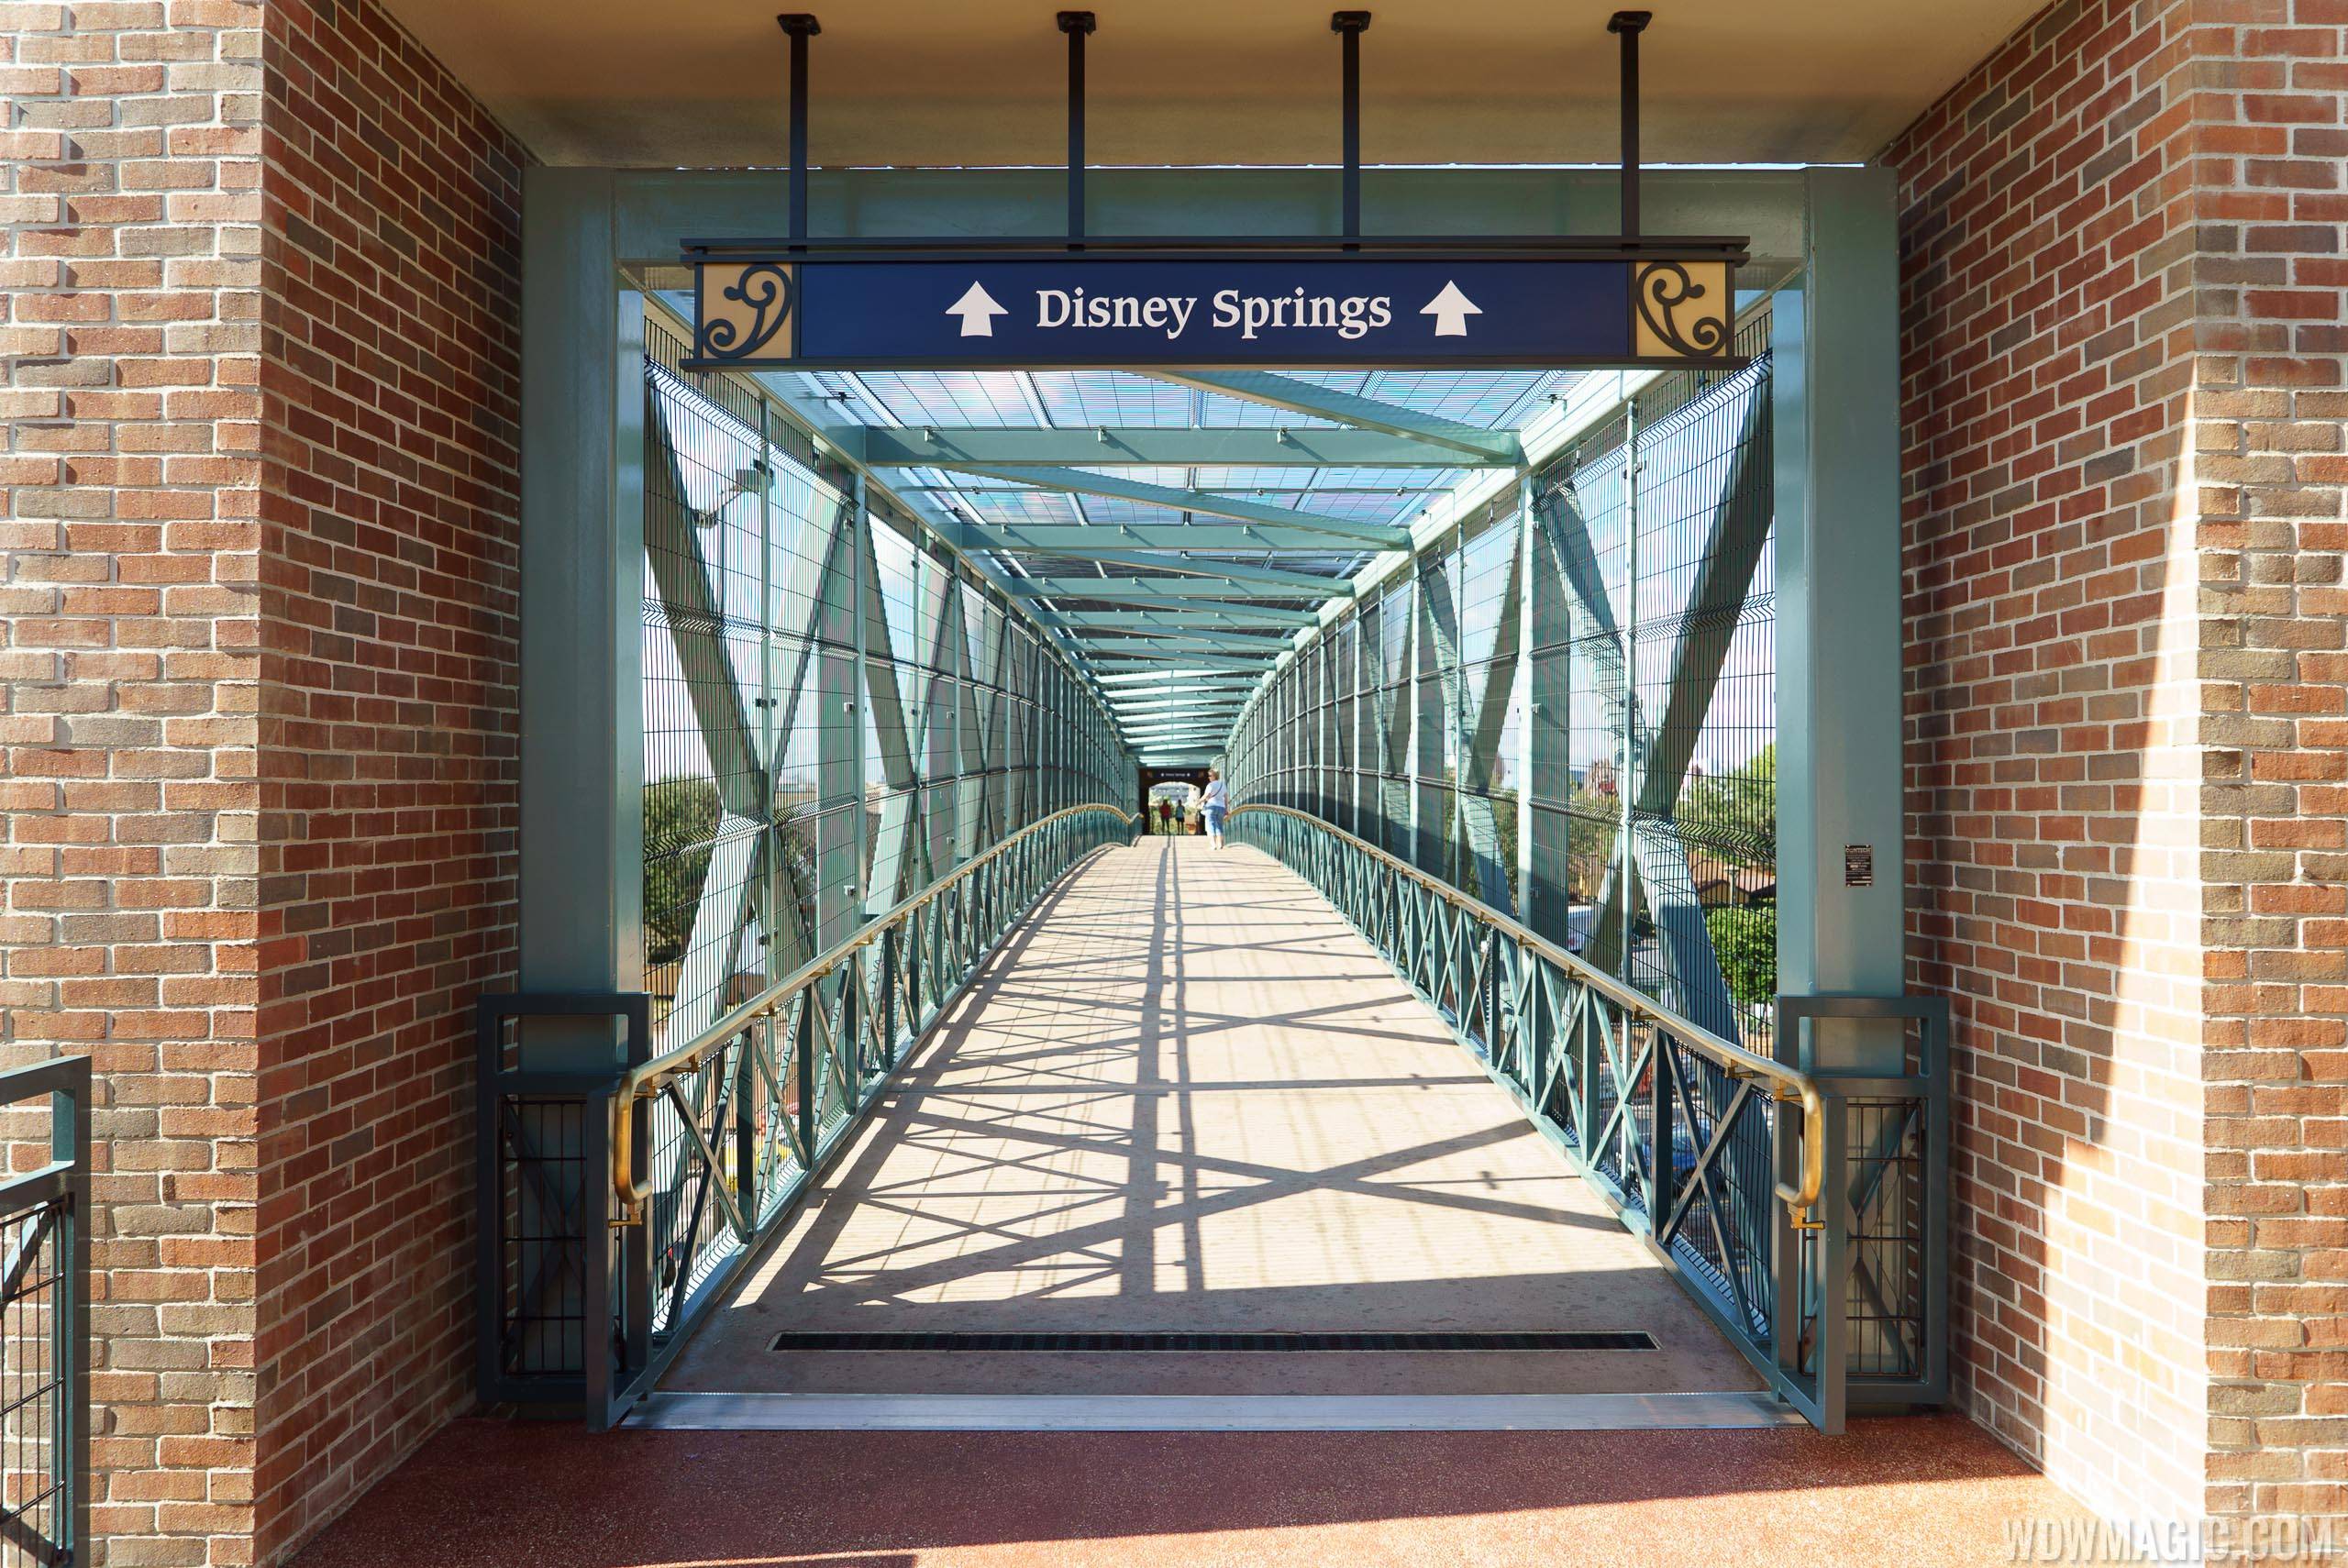 Walkway towards Disney Springs